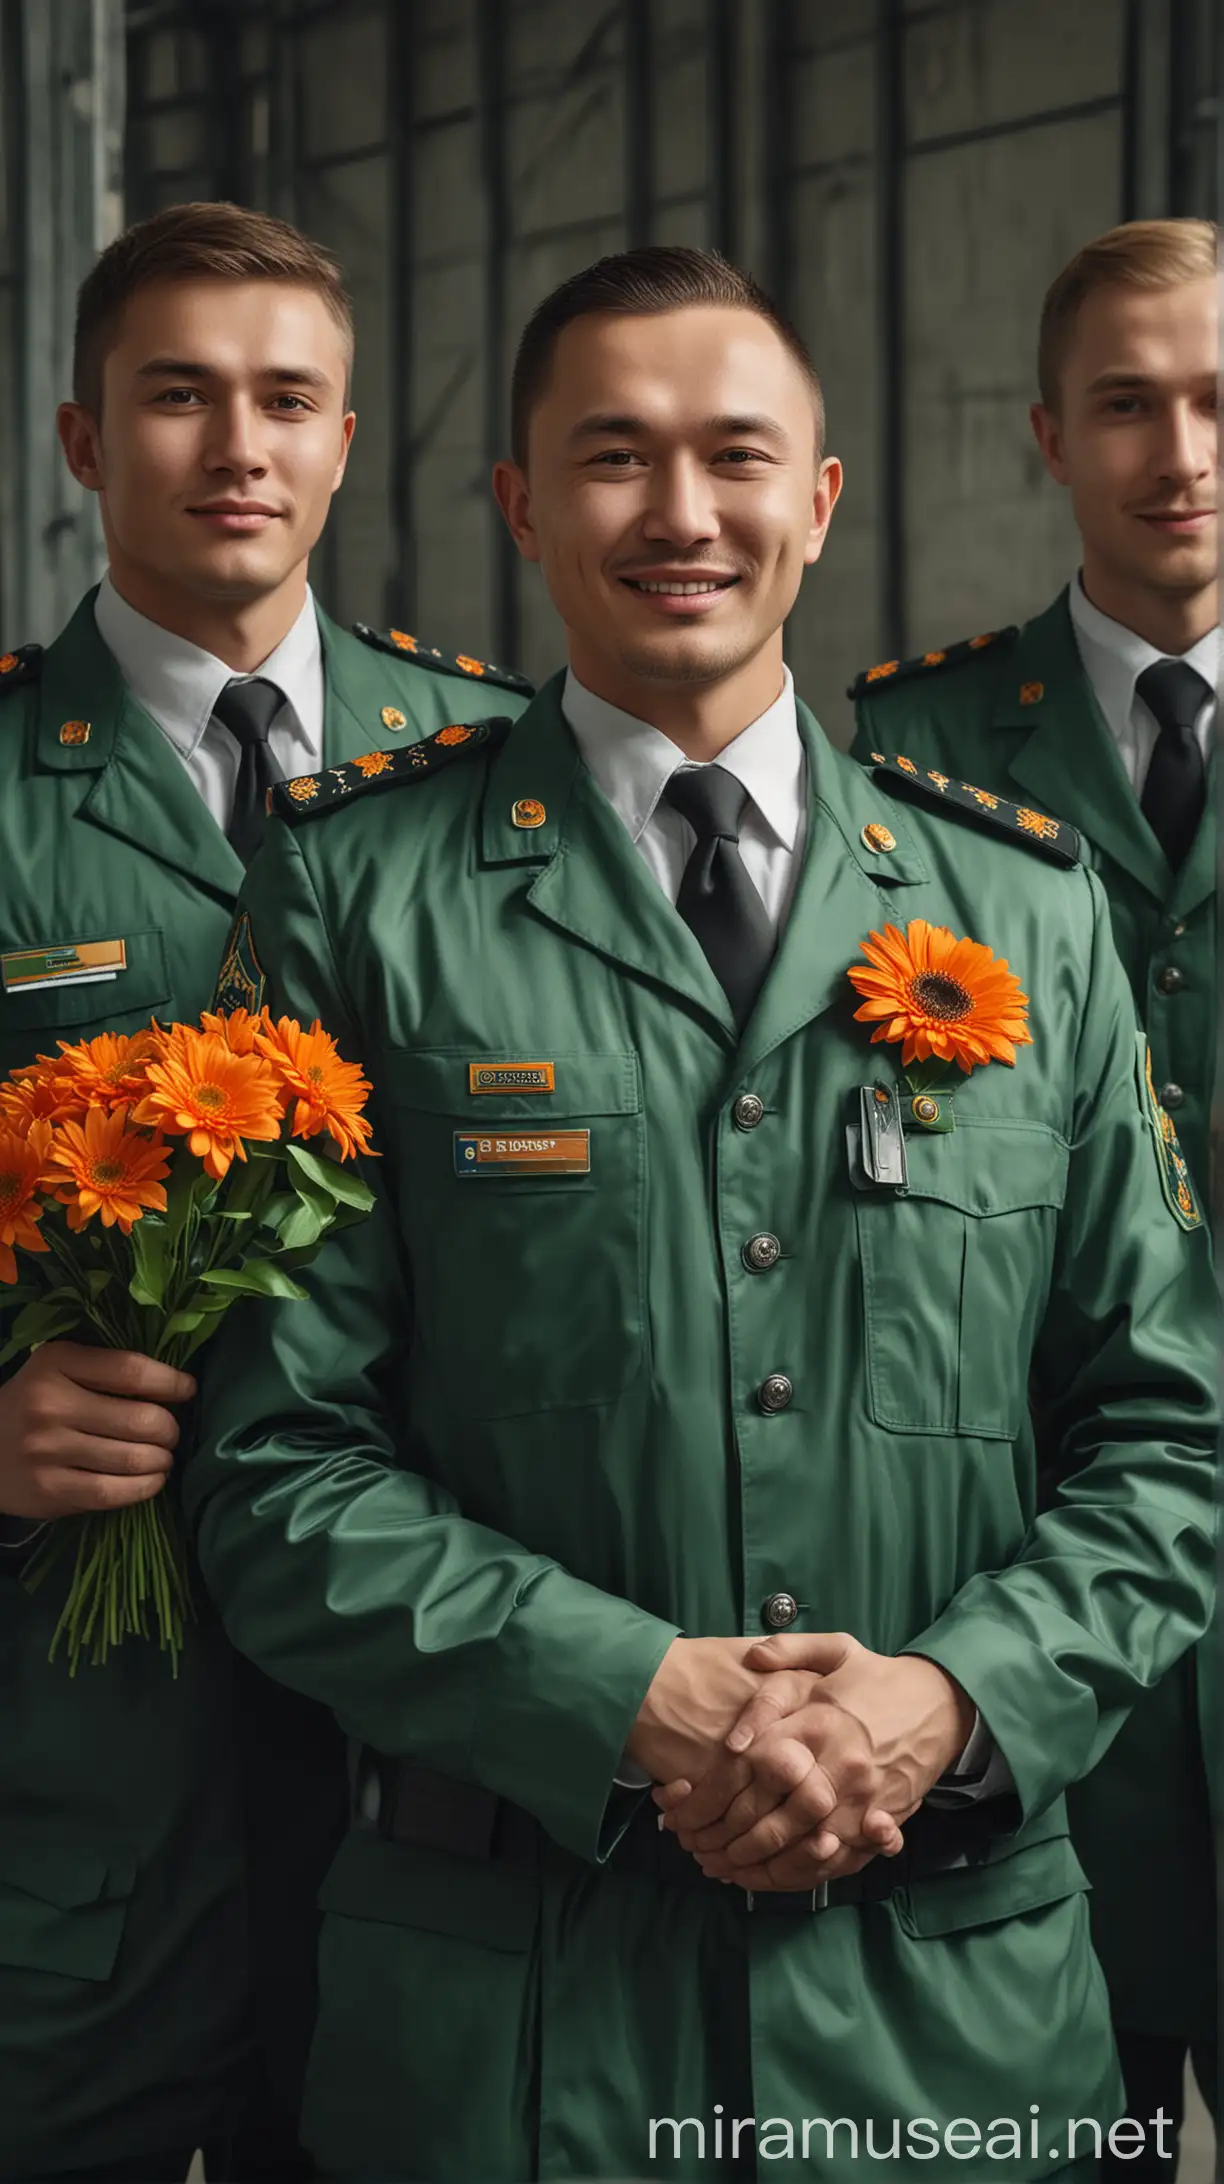 три мужчины: казах, русский, кавказец. Один в форме охранника, второй в форме складского рабочего, третий - в костюме менеджера. У всех одежда в зеленых оттенках. Они держат оранжевые цветы и улыбаются, смотря в камеру. Гиперреализм.